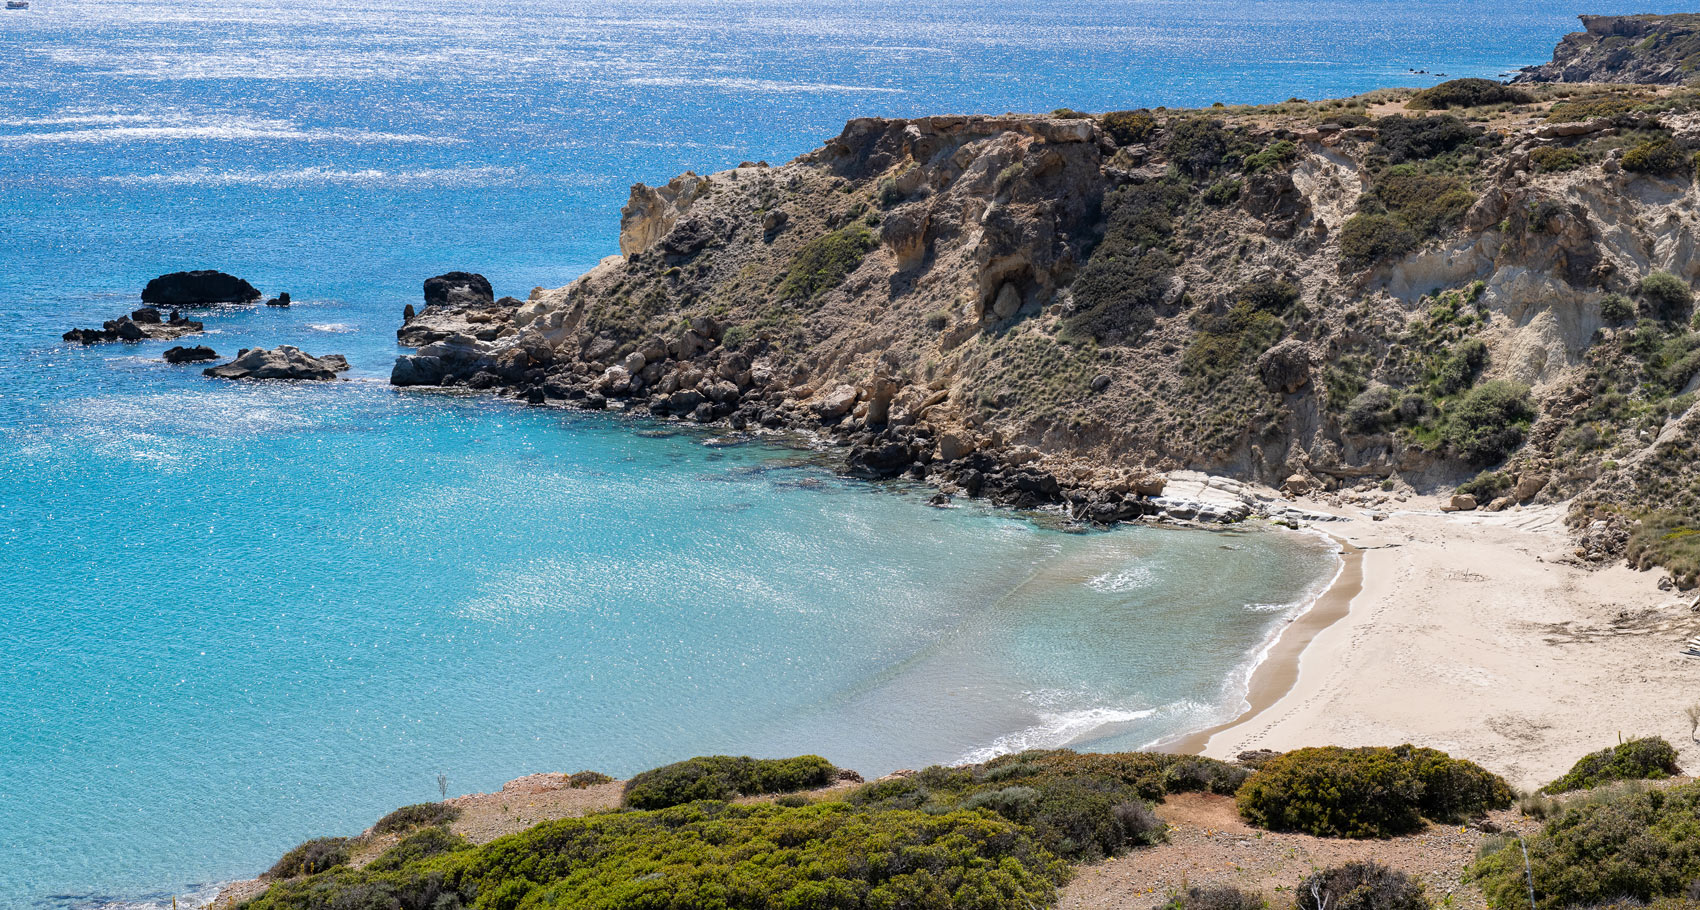 Παραλία στη Κρήτη με χρυσαφένια άμμο